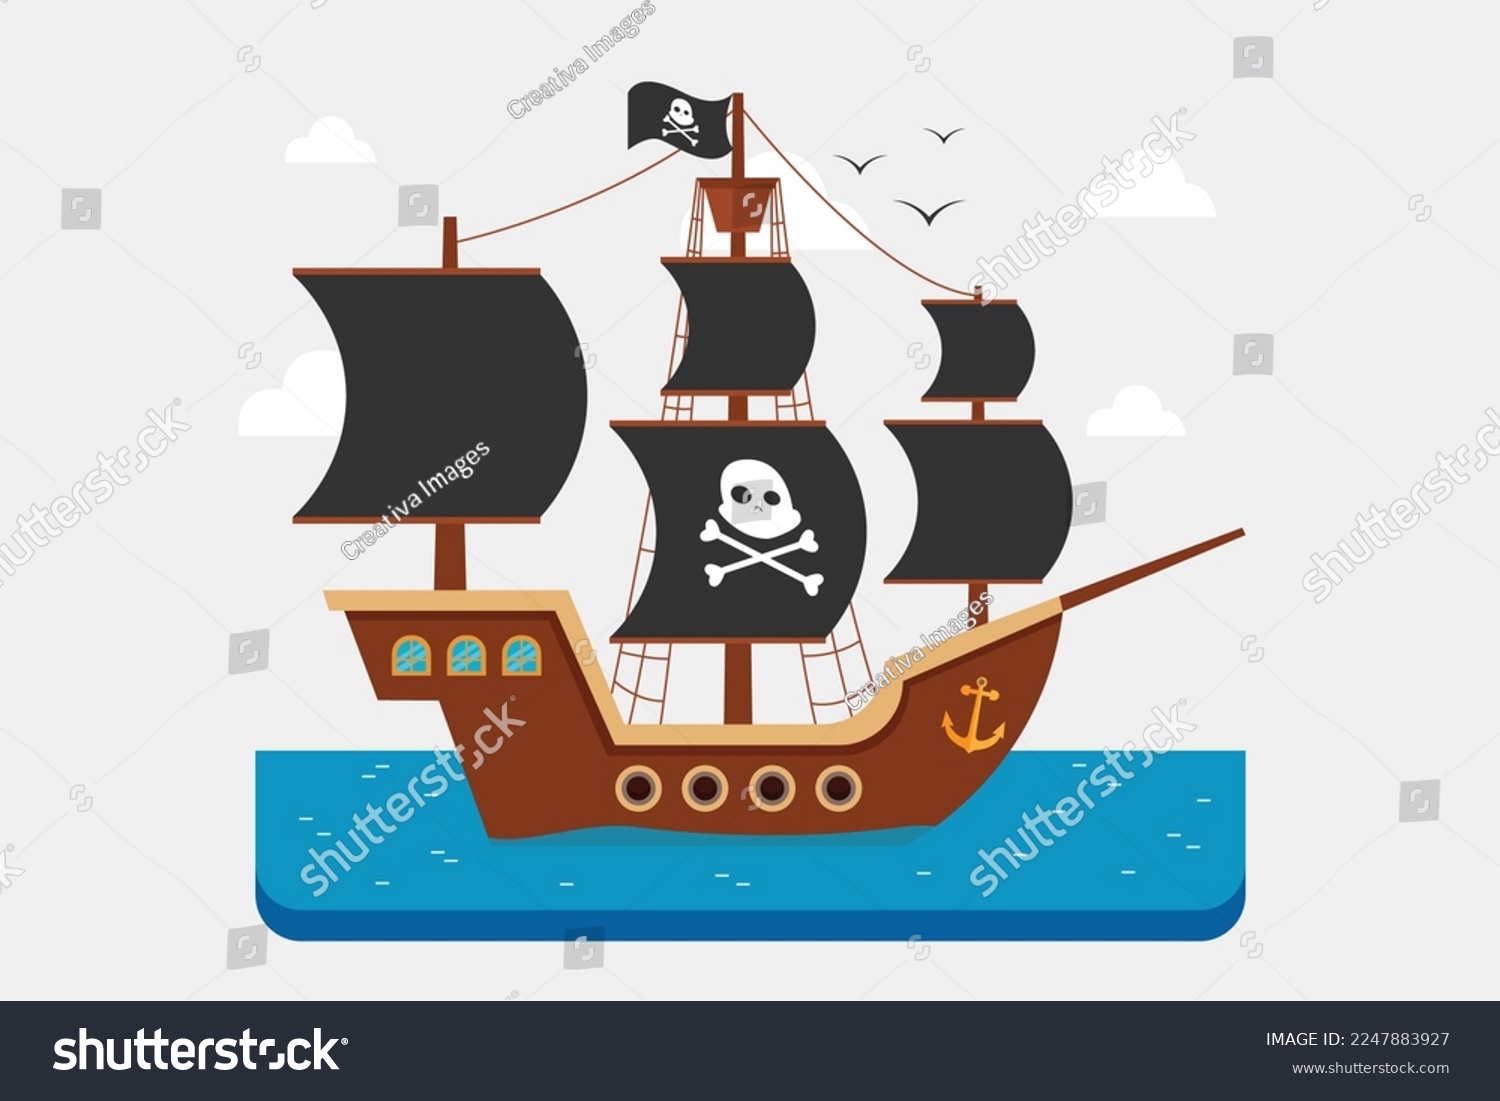 SVG of Wooden pirate ship 2d vector illustration concept for banner, website, illustration, landing page, flyer, etc svg